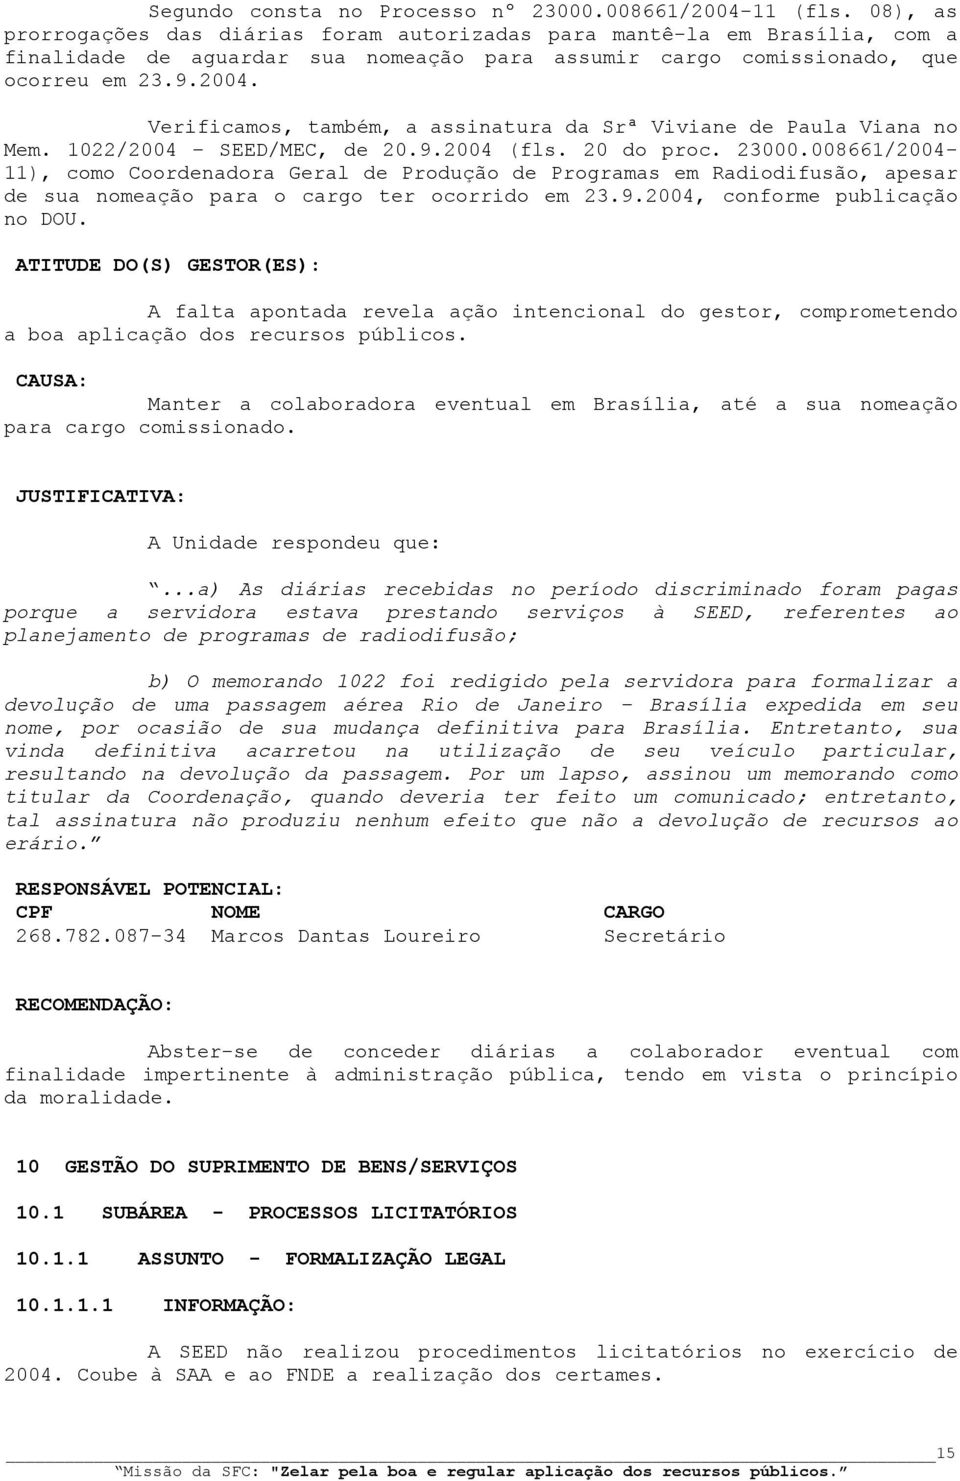 Verificamos, também, a assinatura da Srª Viviane de Paula Viana no Mem. 1022/2004 SEED/MEC, de 20.9.2004 (fls. 20 do proc. 23000.